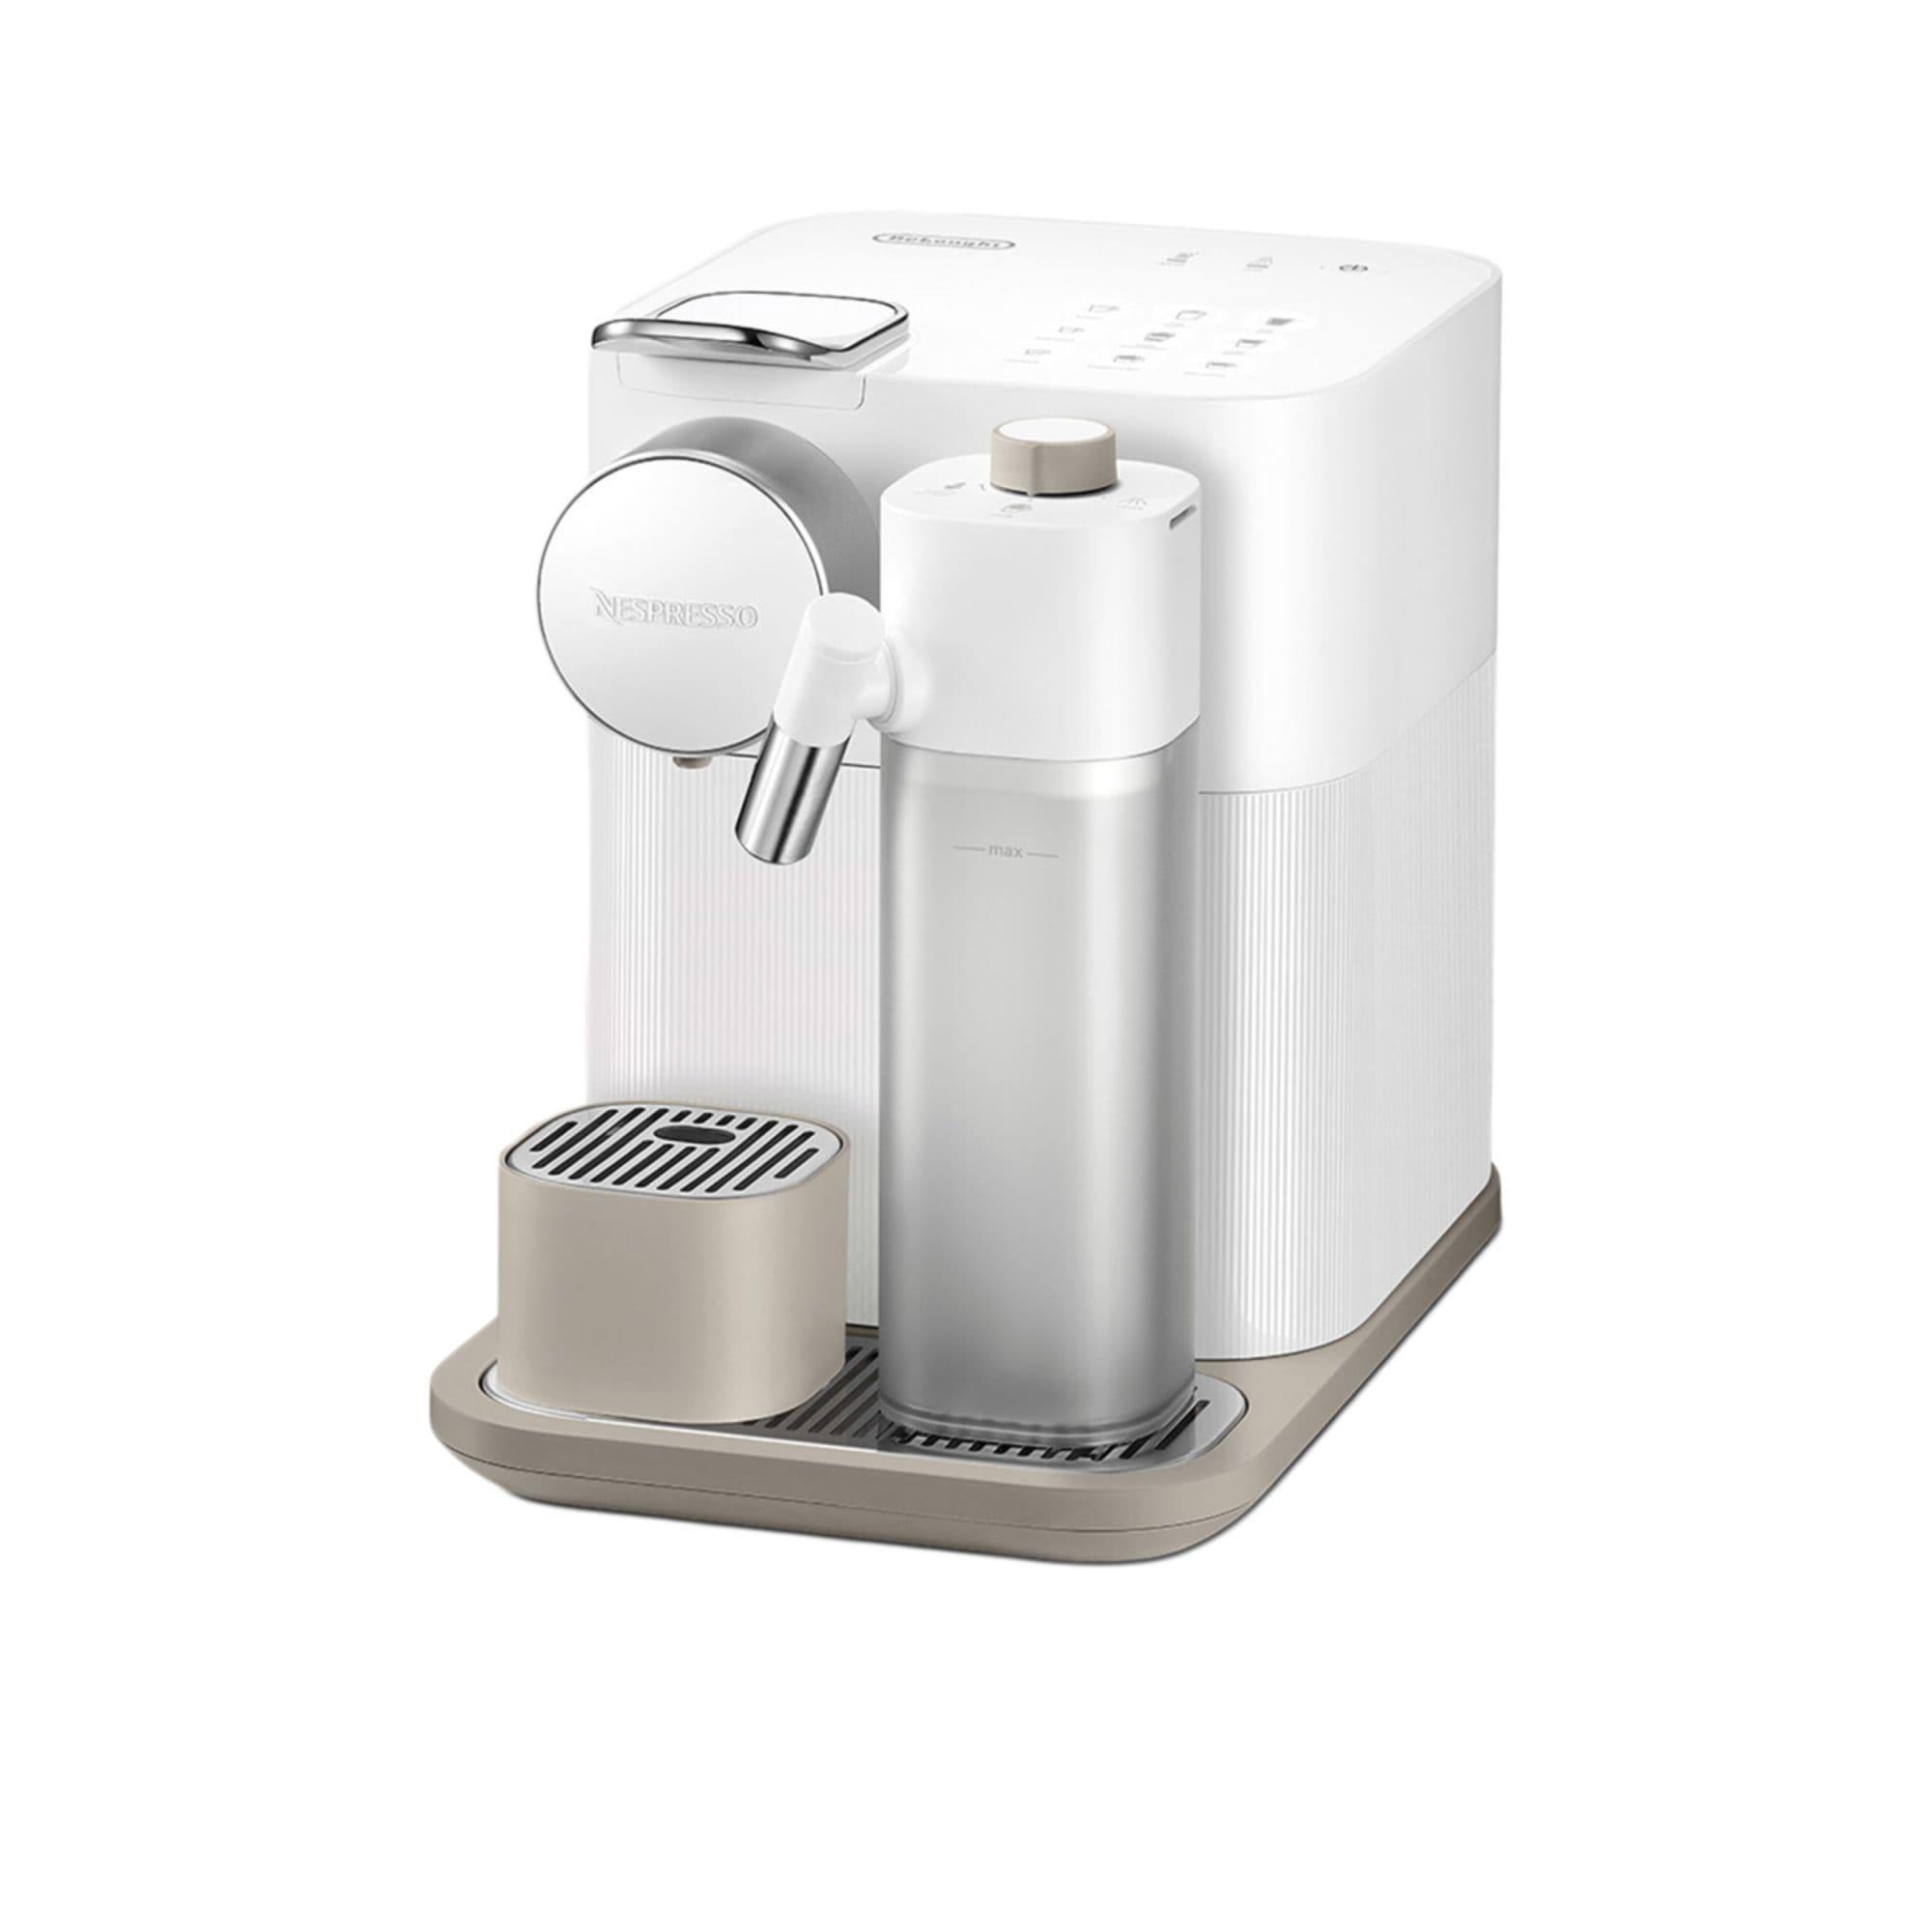 DeLonghi Nespresso Gran Lattisima EN640W Automatic Capsule Coffee Machine White Image 4